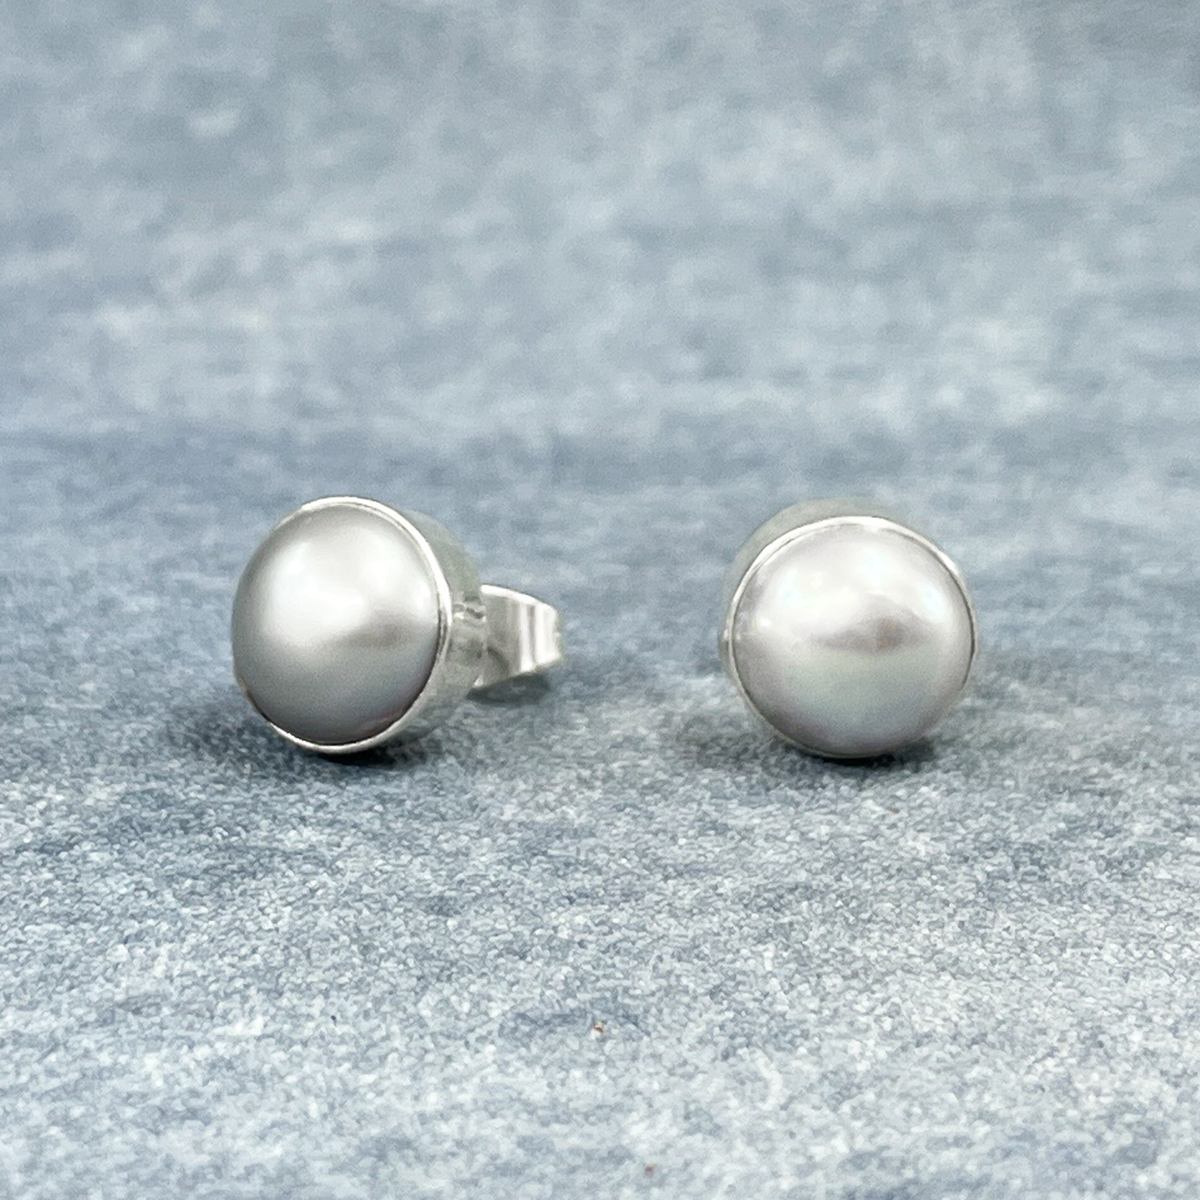 Pearla - Mounted Gray Pearl Silver Earrings - Stud